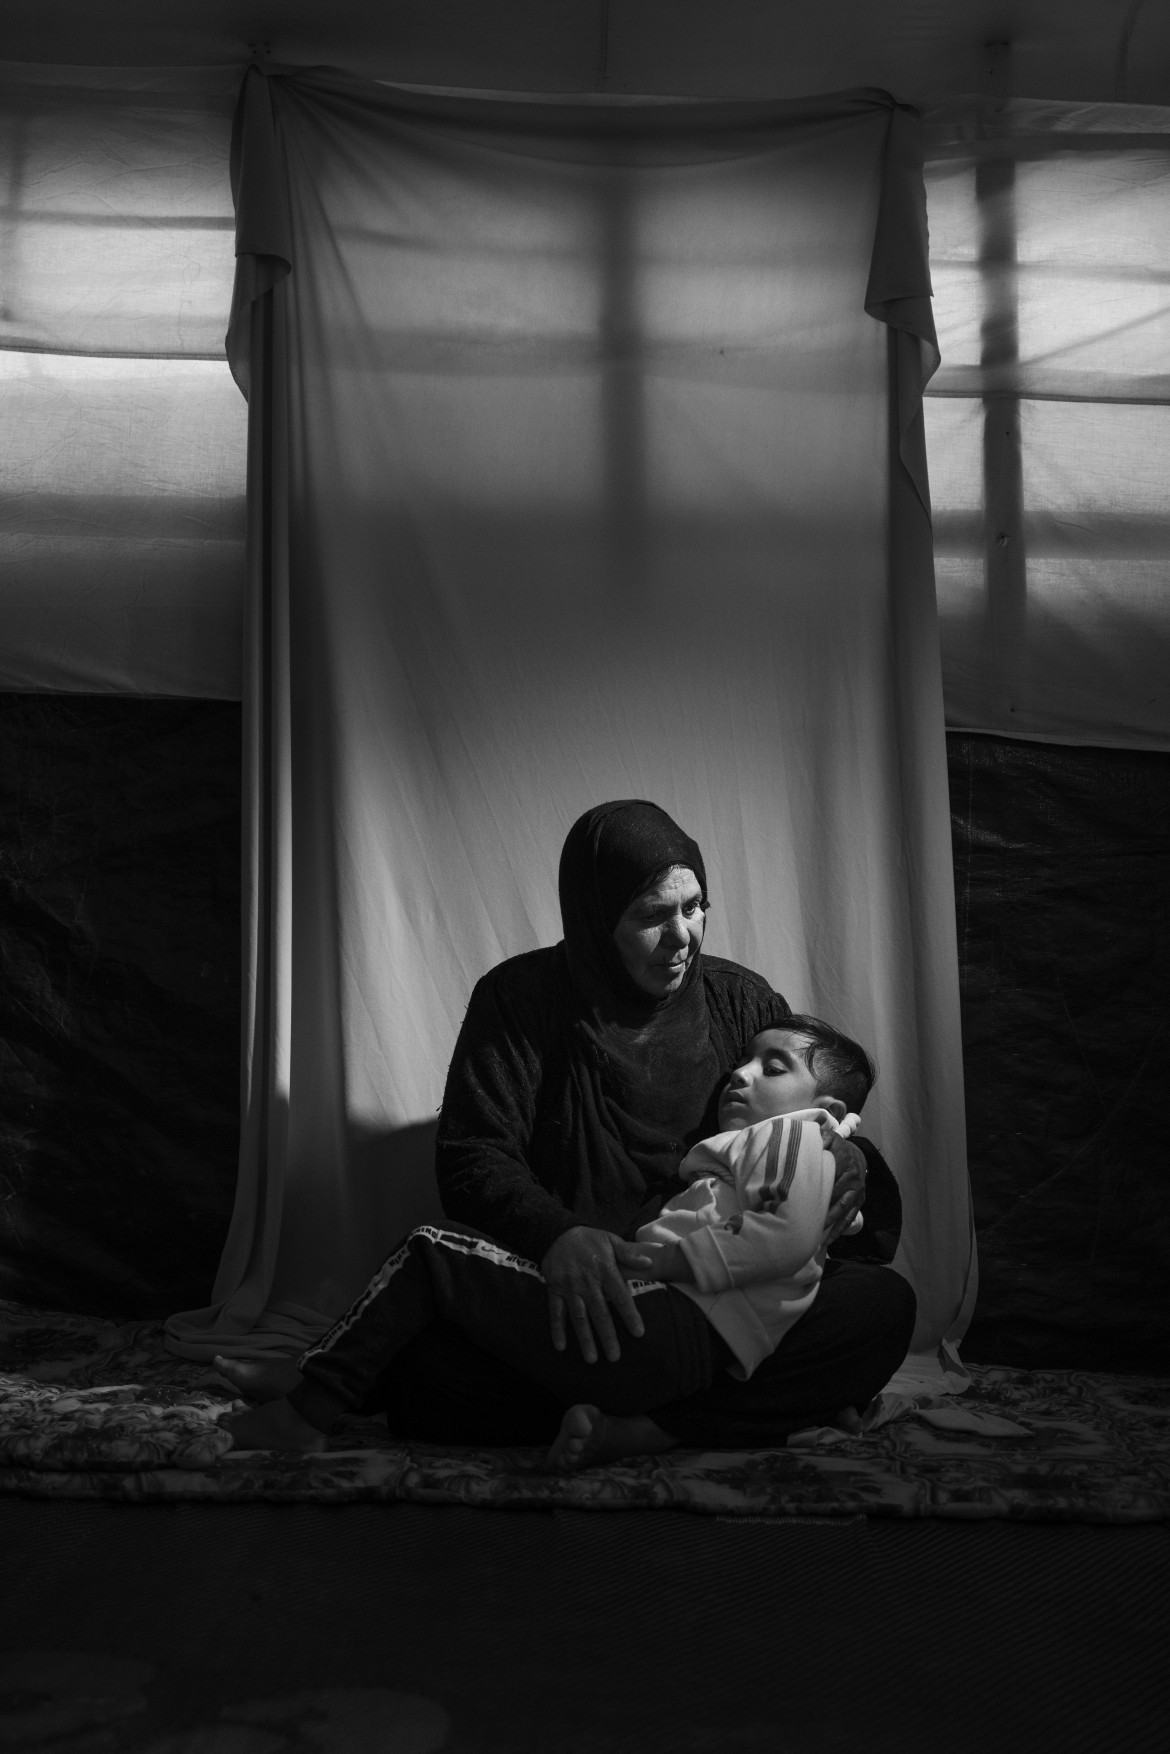 fot. Adam Ferguson / New York Times, z cyklu "The Haunted", 1. miejsce w kategorii Portrait<br></br><br></br>Po opuszczeniu przez IS Mosulu w północnym Iraku, tysiące byłych więźniów zostało wyzwolonych. Adam Ferguson wykonał portrety wysiedlonych jazydów i innych mniejszości, którzy ucierpieli z powodu łamania praw człowieka przez. Kiedy IS zajęło ziemie jazydzkie w północnym Iraku, bojownicy zamordowali około 5000 mężczyzn. Kobiety i dziewczęta zostały uprowadzone i zmuszone do niewolnictwa seksualnego, a chłopców zmuszono do szkolenia jako dzieci-żołnierzy. Przesiedlono około 500 000 jazydów. Wielu obecnie mieszka w obozach dla uchodźców w Irackim Kurdystanie i gubernatorstwie Niniwy w Iraku. Jan Kizilhan, psycholog pracujący w jednym z takich obozów, wskazuje na skutki poważnej traumy osobistej i kulturowej. Należą do nich poczucie bezradności i bezsilności, napięcie i różnorodne choroby fizyczne.